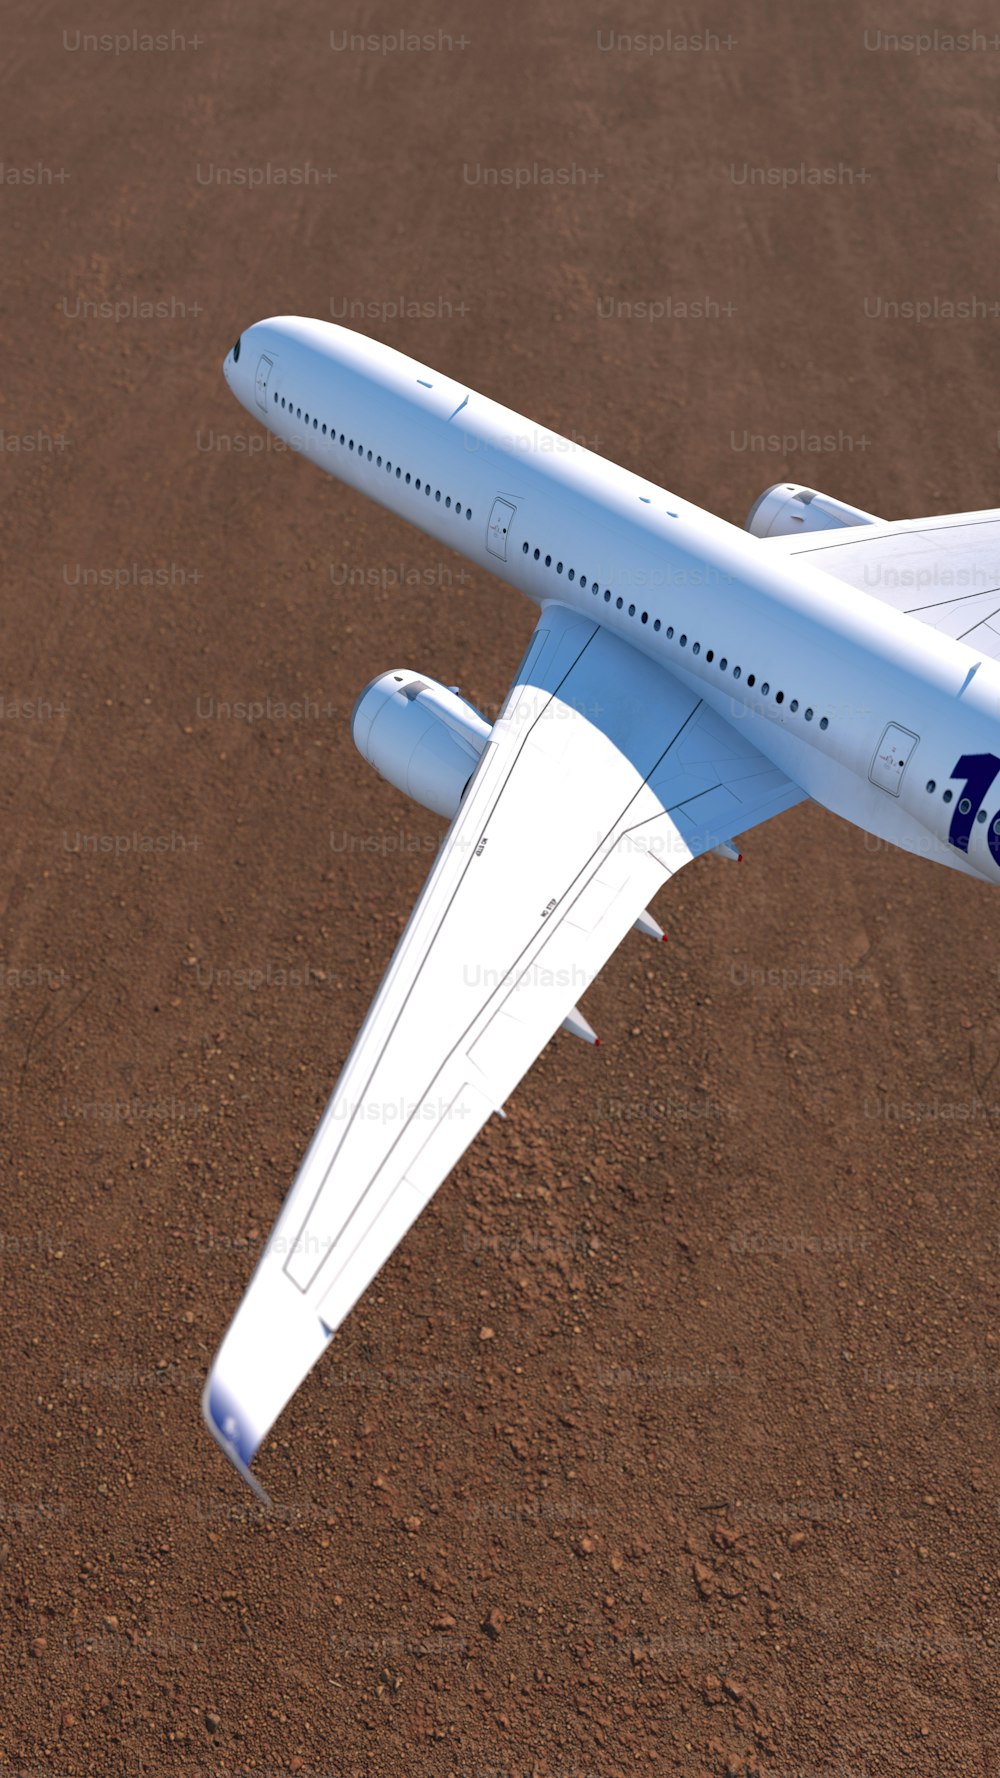 Un modelo de un avión en un suelo de tierra